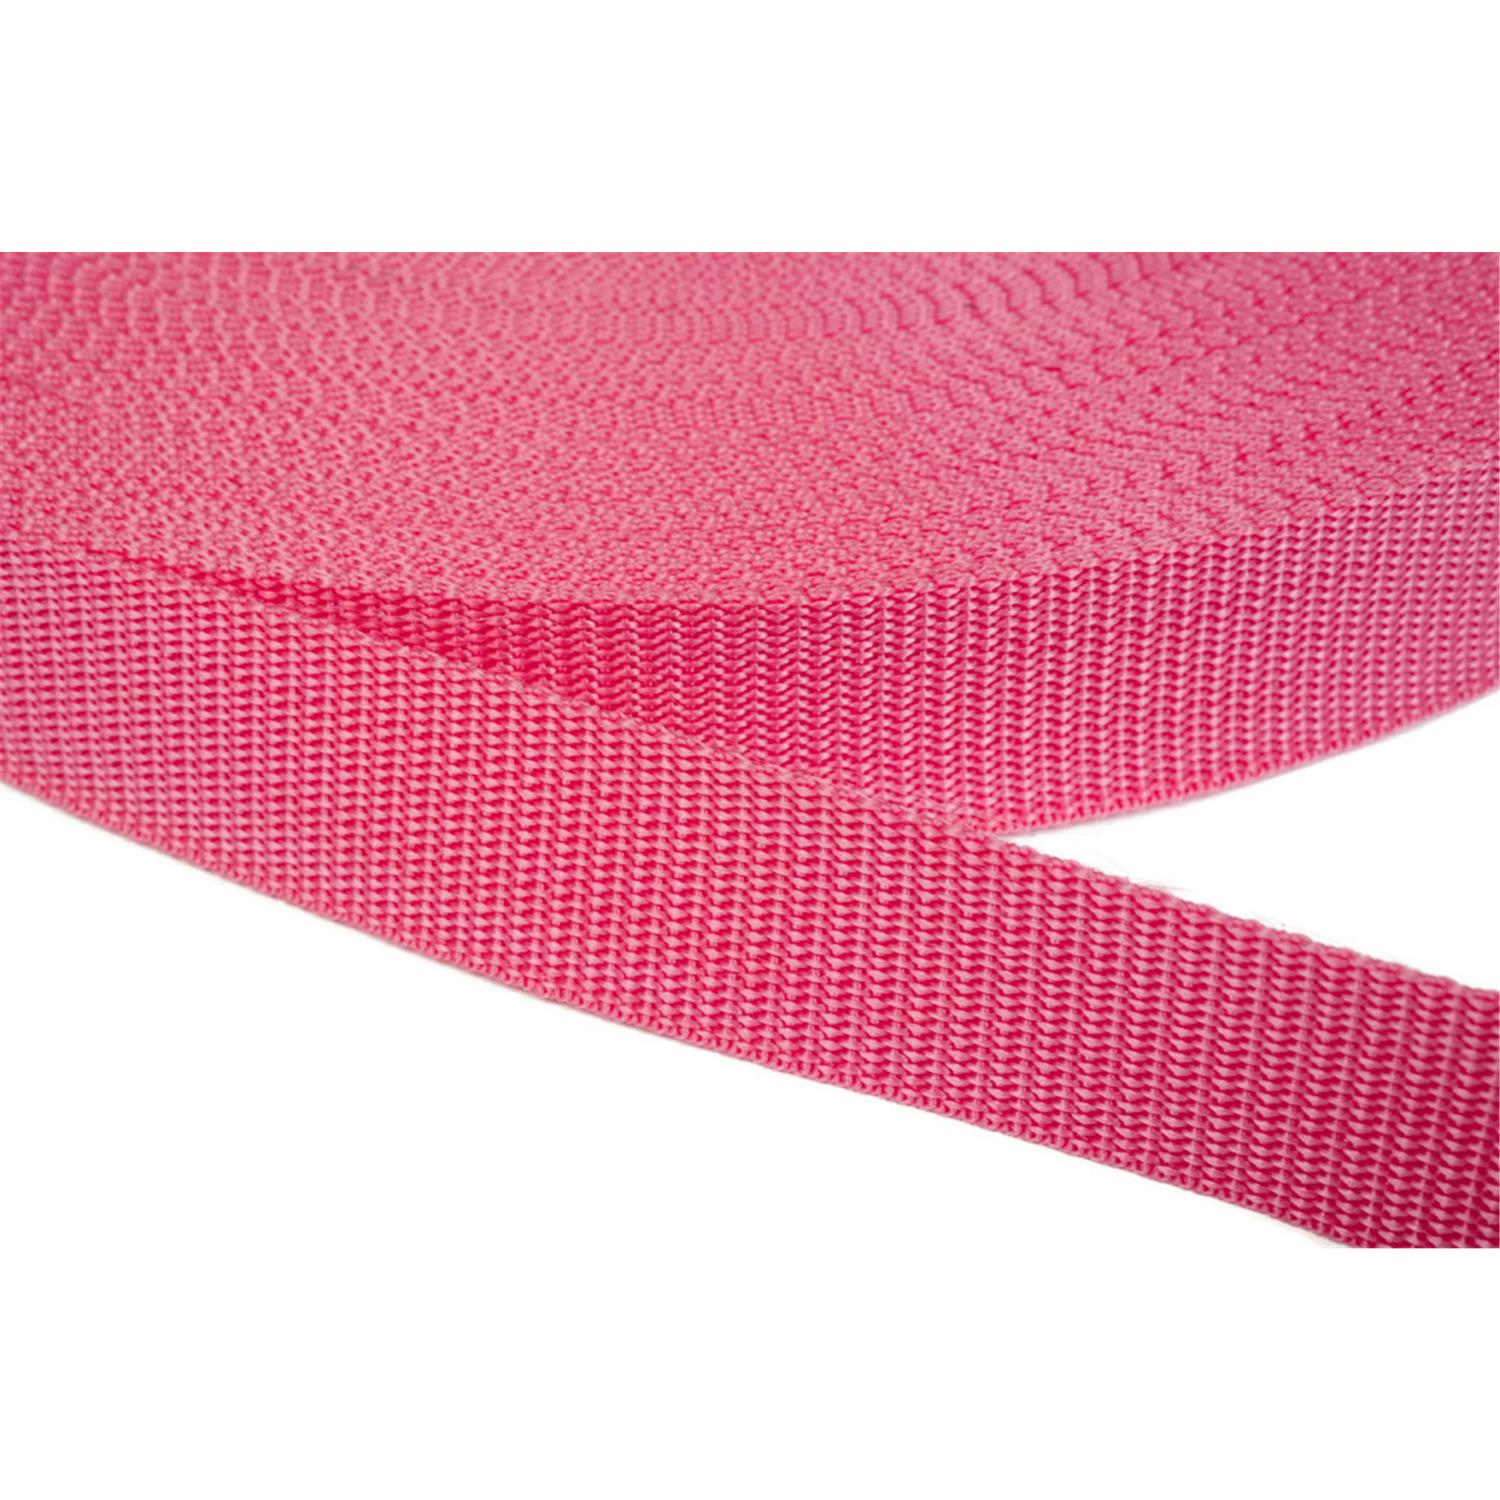 Gurtband 40mm breit aus Polypropylen in 41 Farben 13 - pink 6 Meter